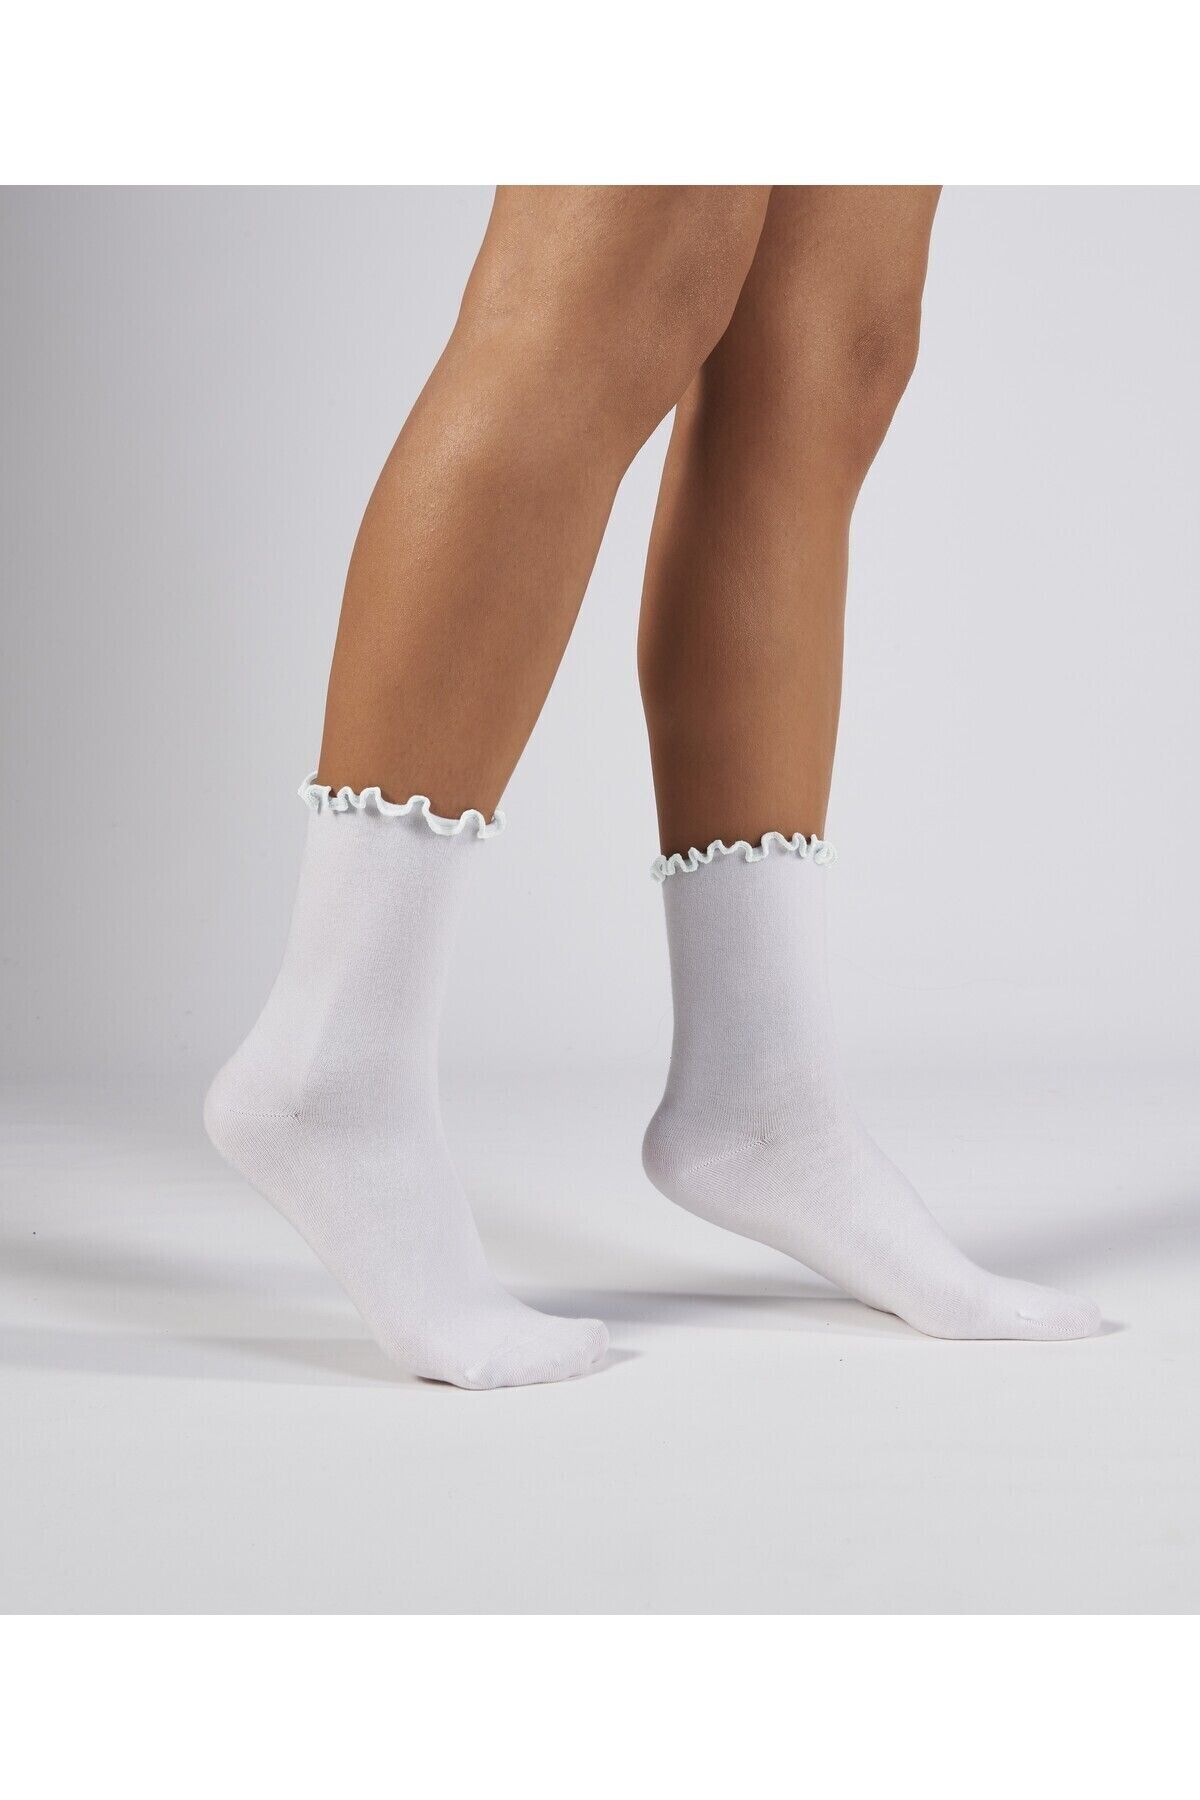 Forwena Beyaz Fırfırlı Modal Lastiksiz Dikişsiz Kadın Soket Çorap